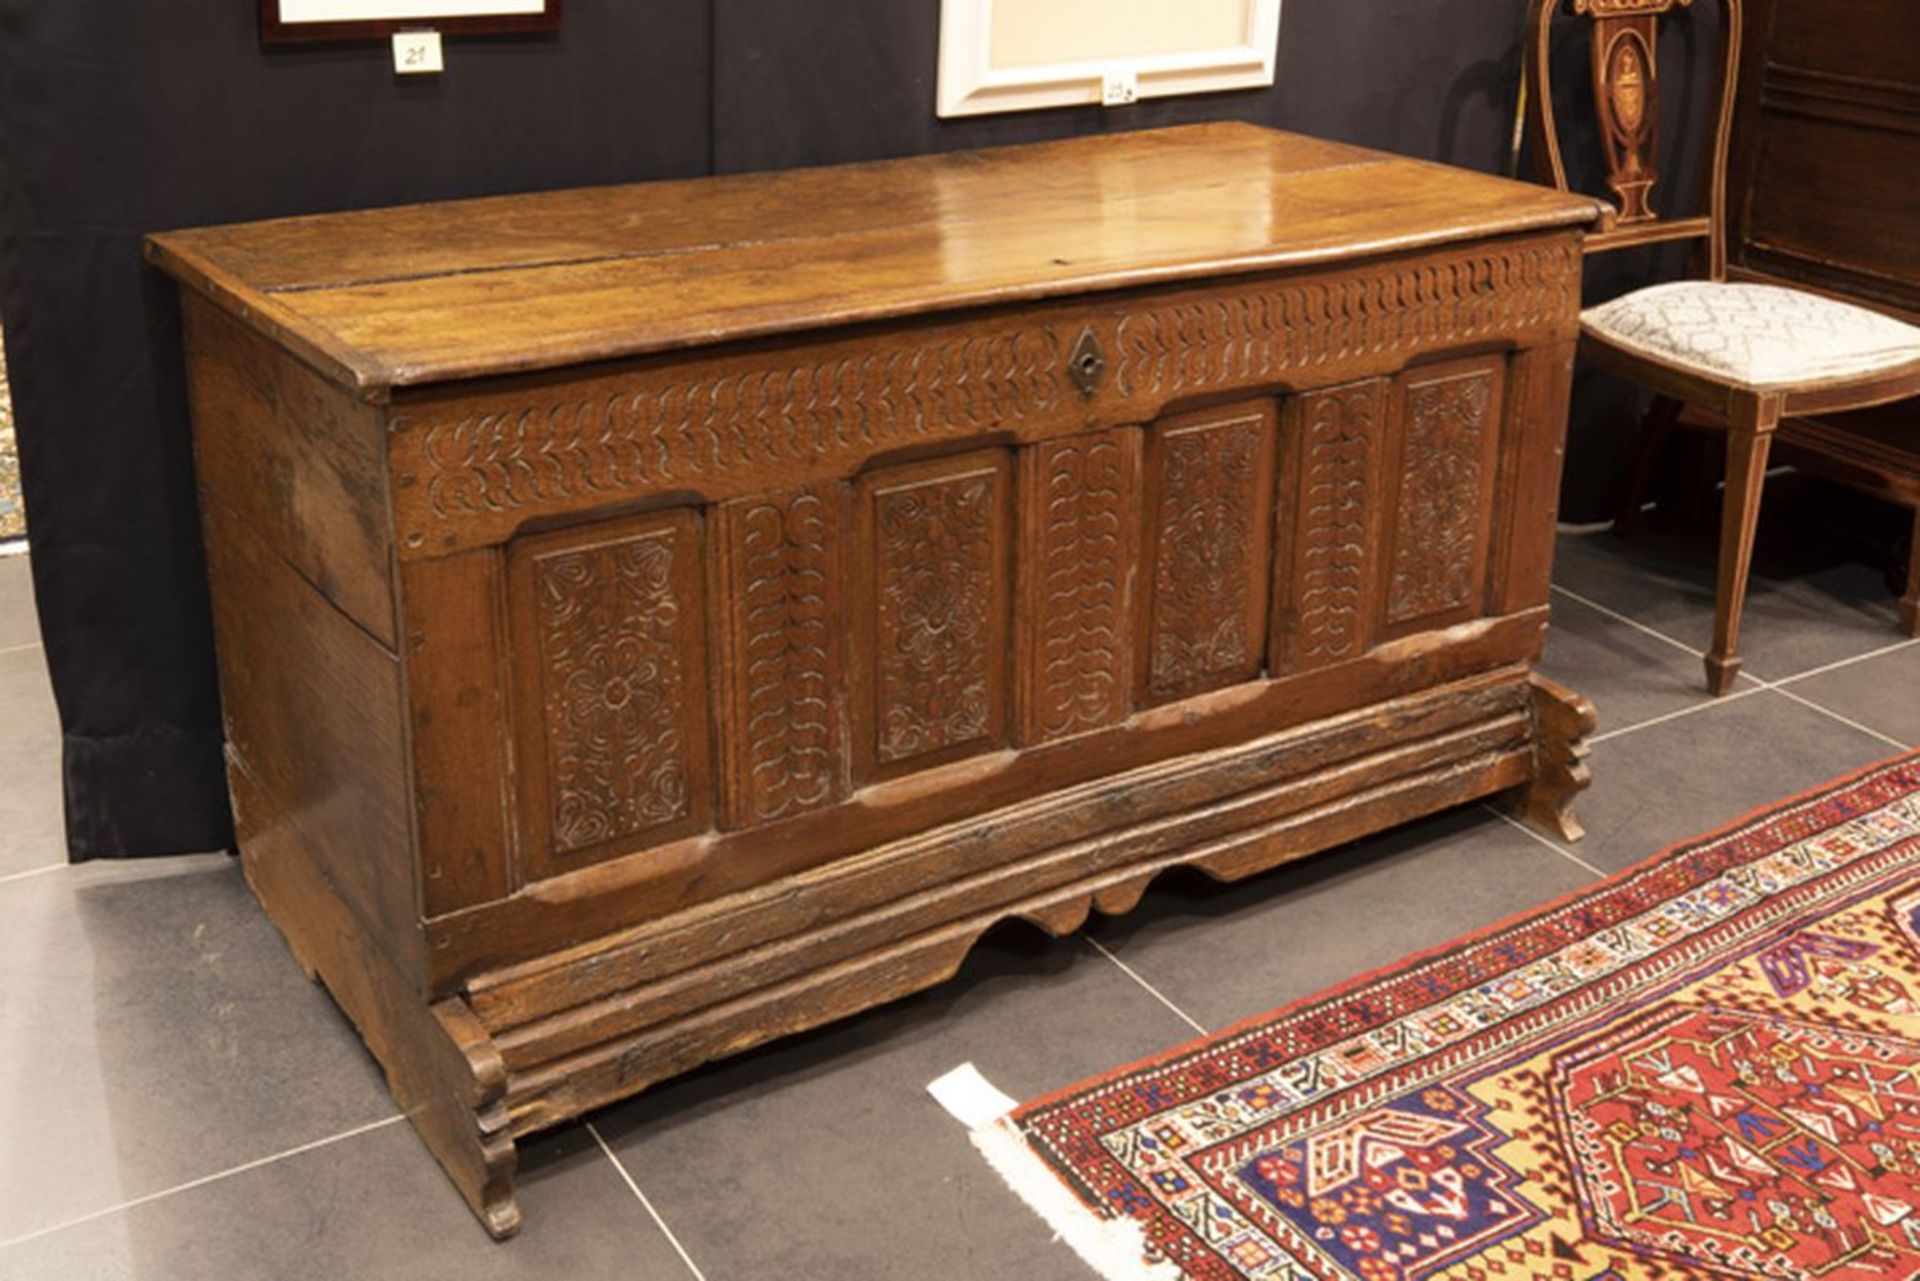 Achttiende eeuwse koffer in eik met front met vier panelen was ooit eigendom van [...]